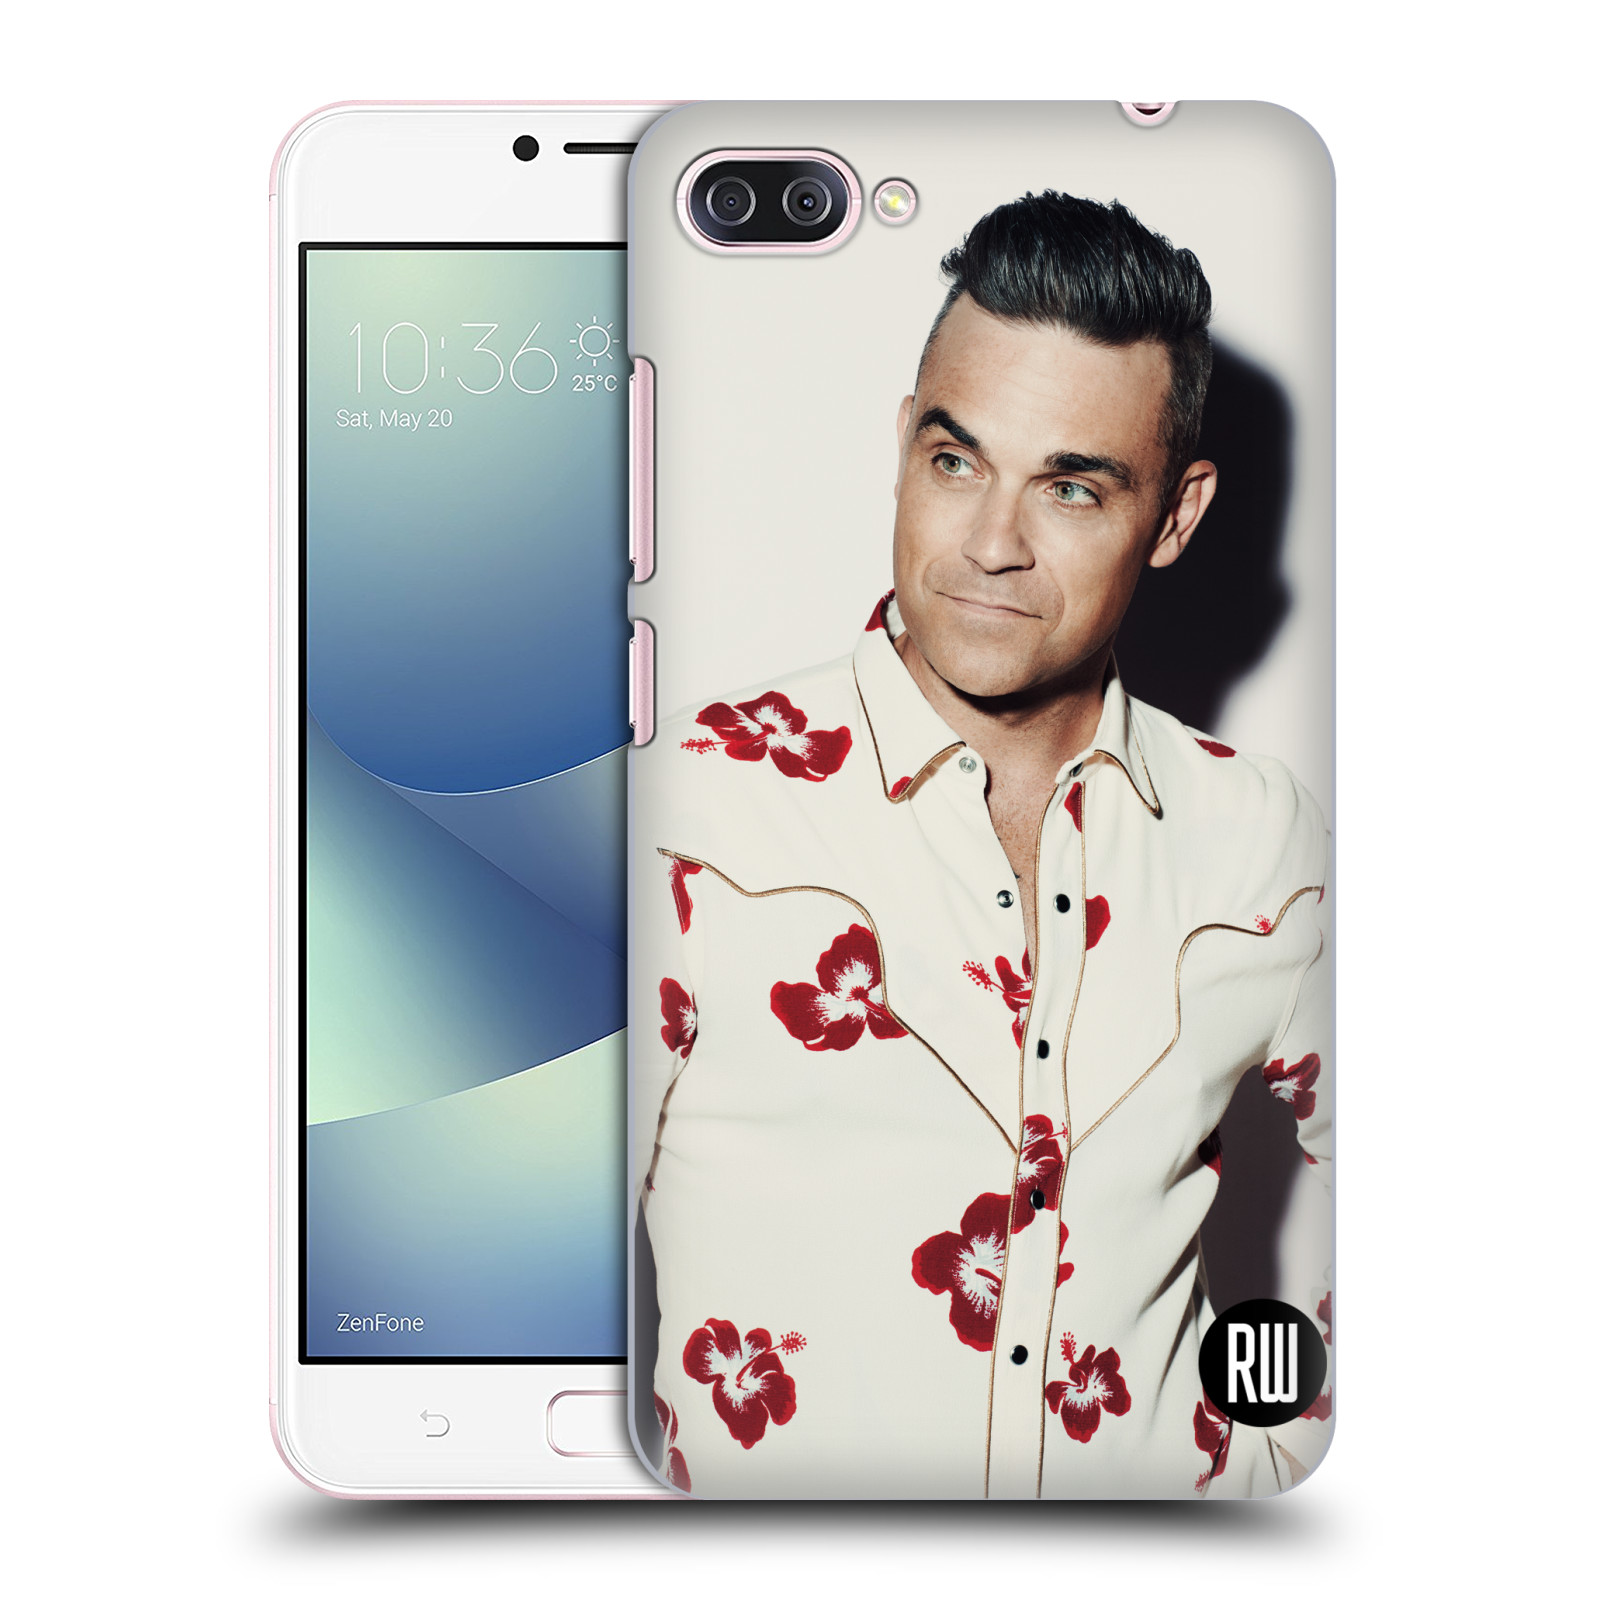 Zadní obal pro mobil Asus Zenfone 4 MAX / 4 MAX PRO (ZC554KL) - HEAD CASE - Zpěvák Robbie Williams - Foto 1